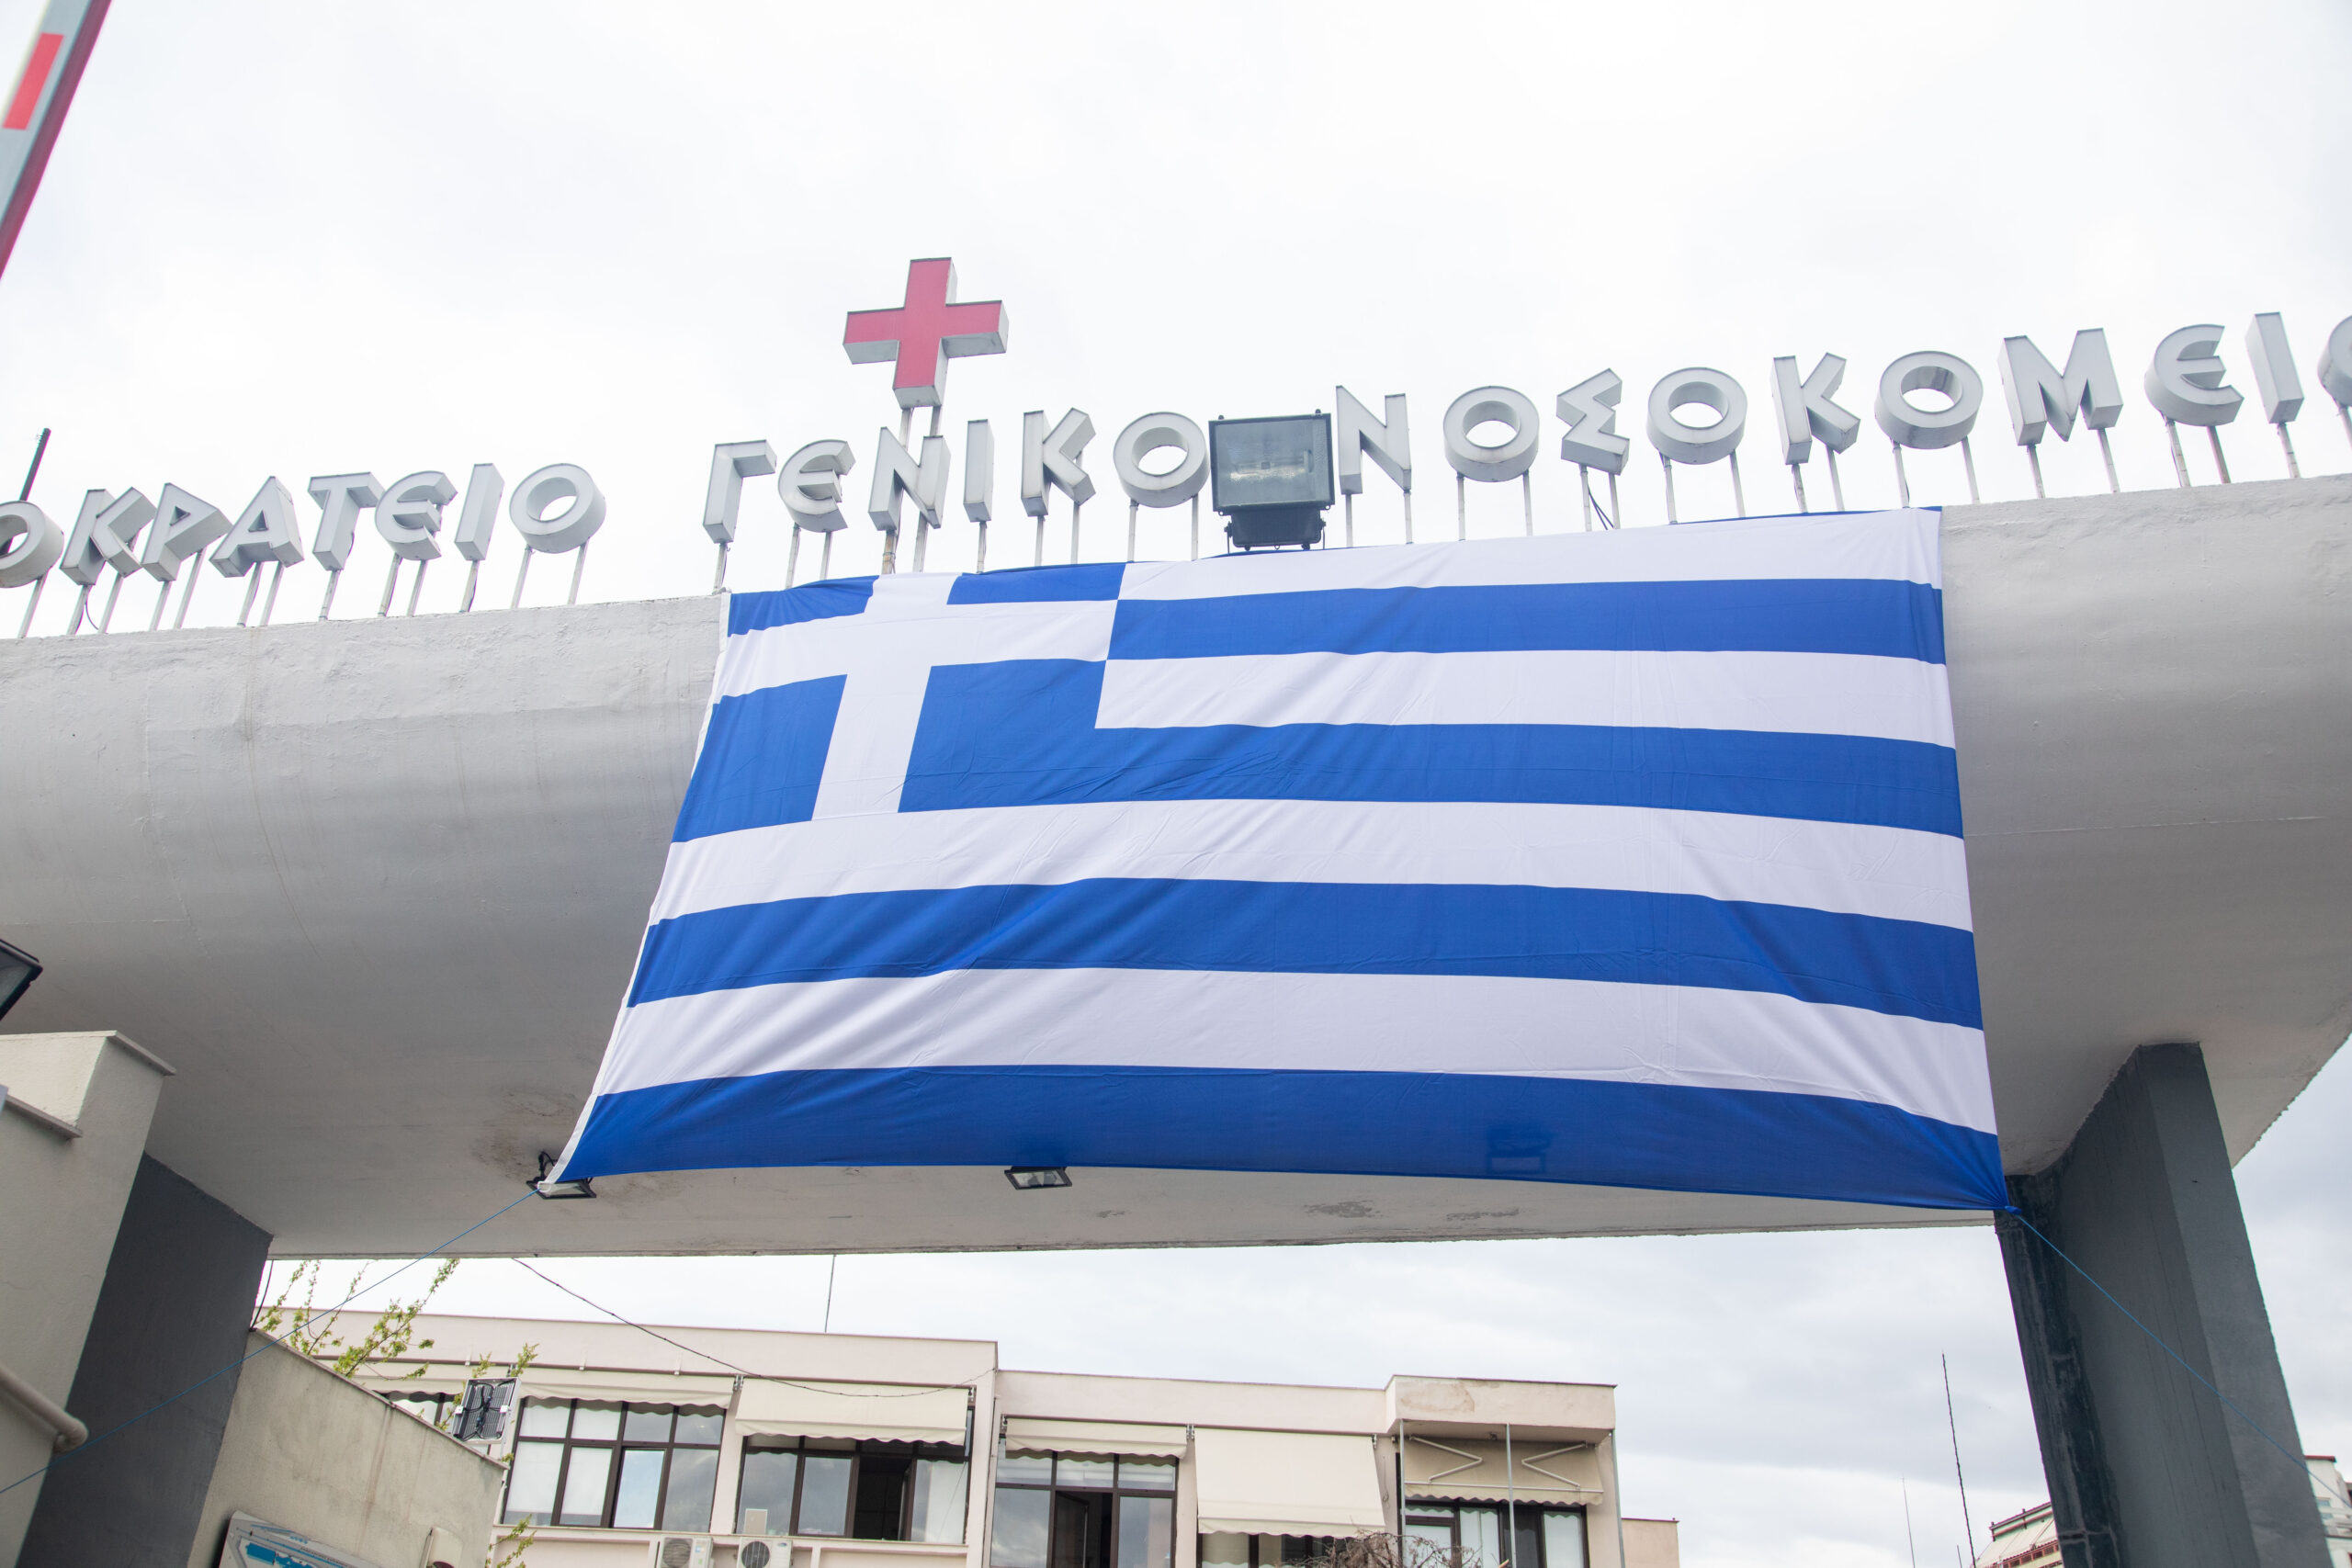 Θεσσαλονίκη: Σημαντικό έργο στο Αιμοδυναμικό Εργαστήριο του Ιπποκράτειου Νοσοκομείου παρά τις ελλείψεις προσωπικού